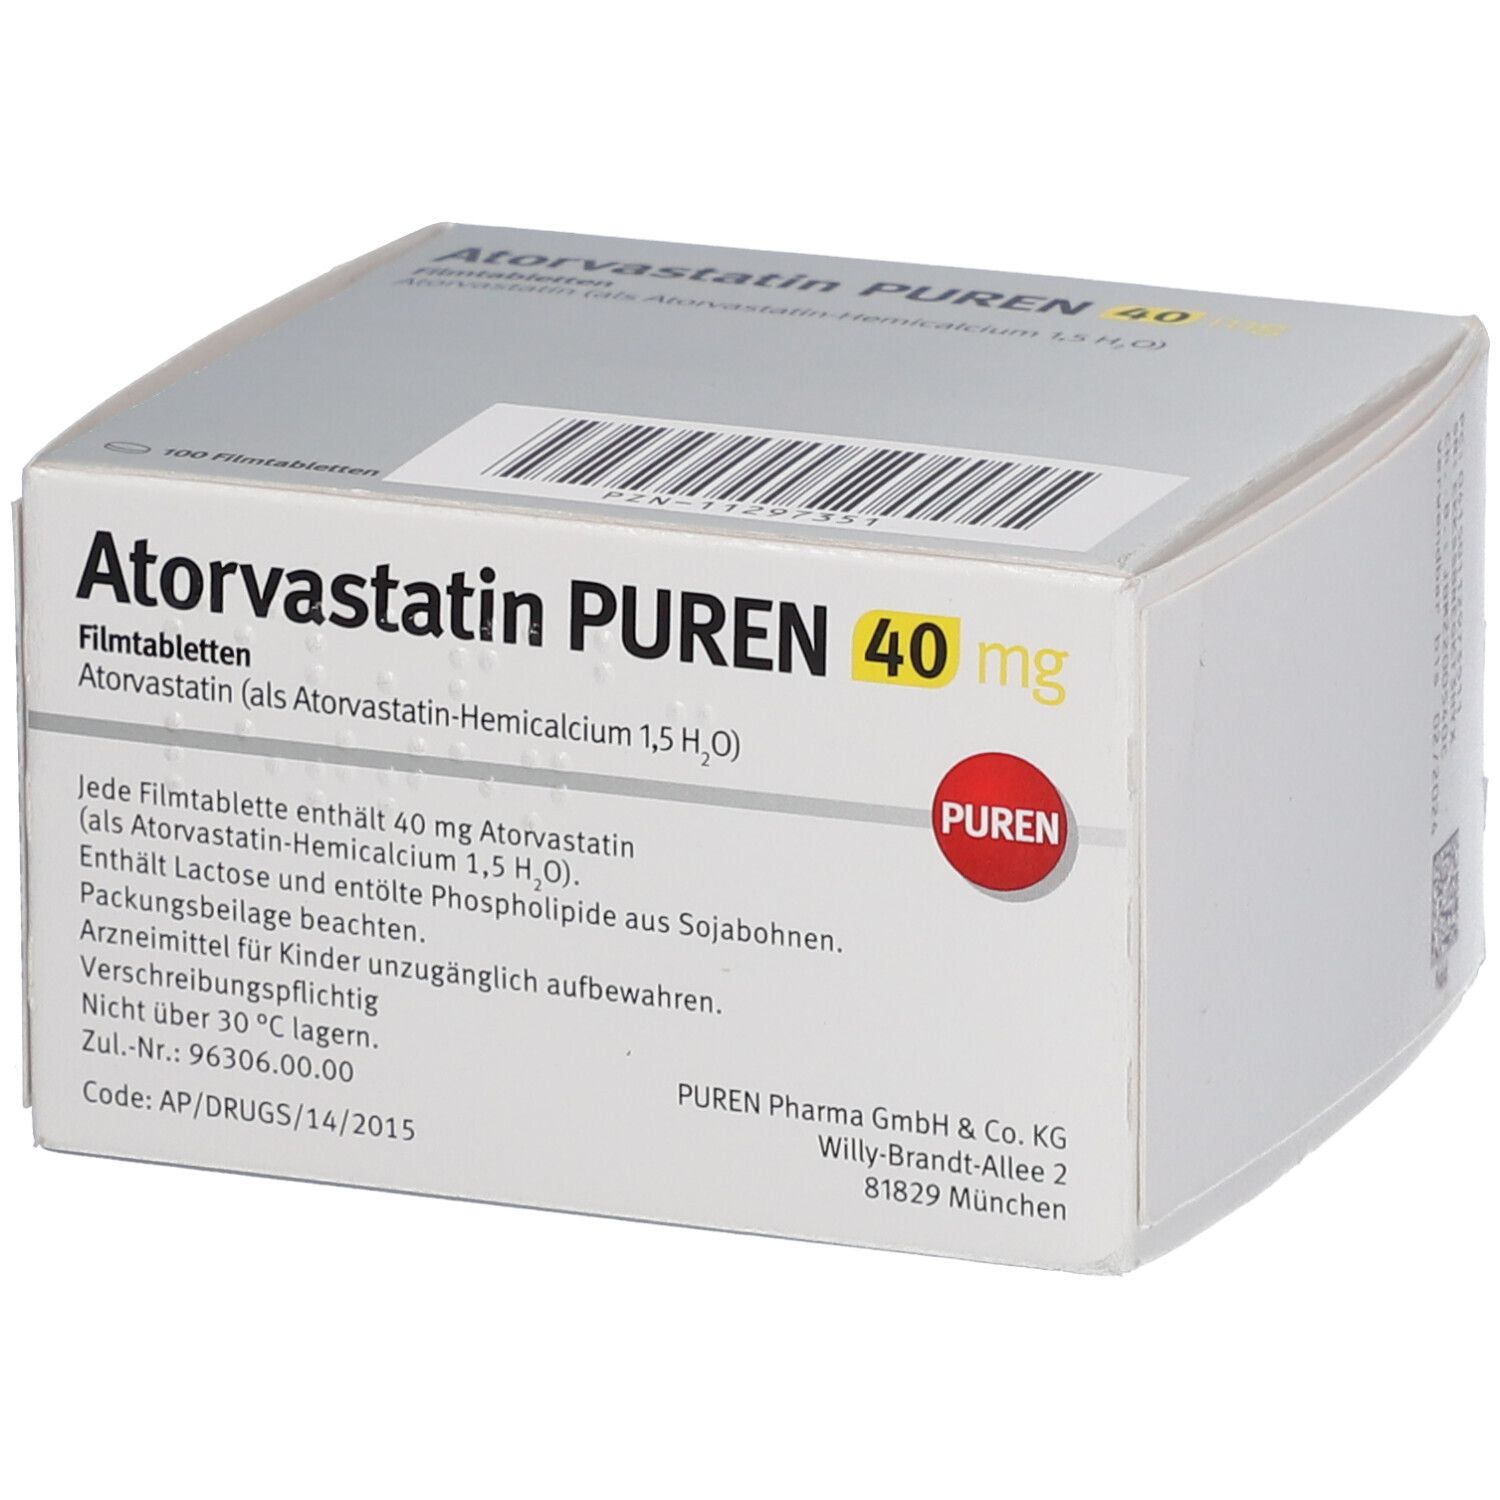 Atorvastatin PUREN 40 mg